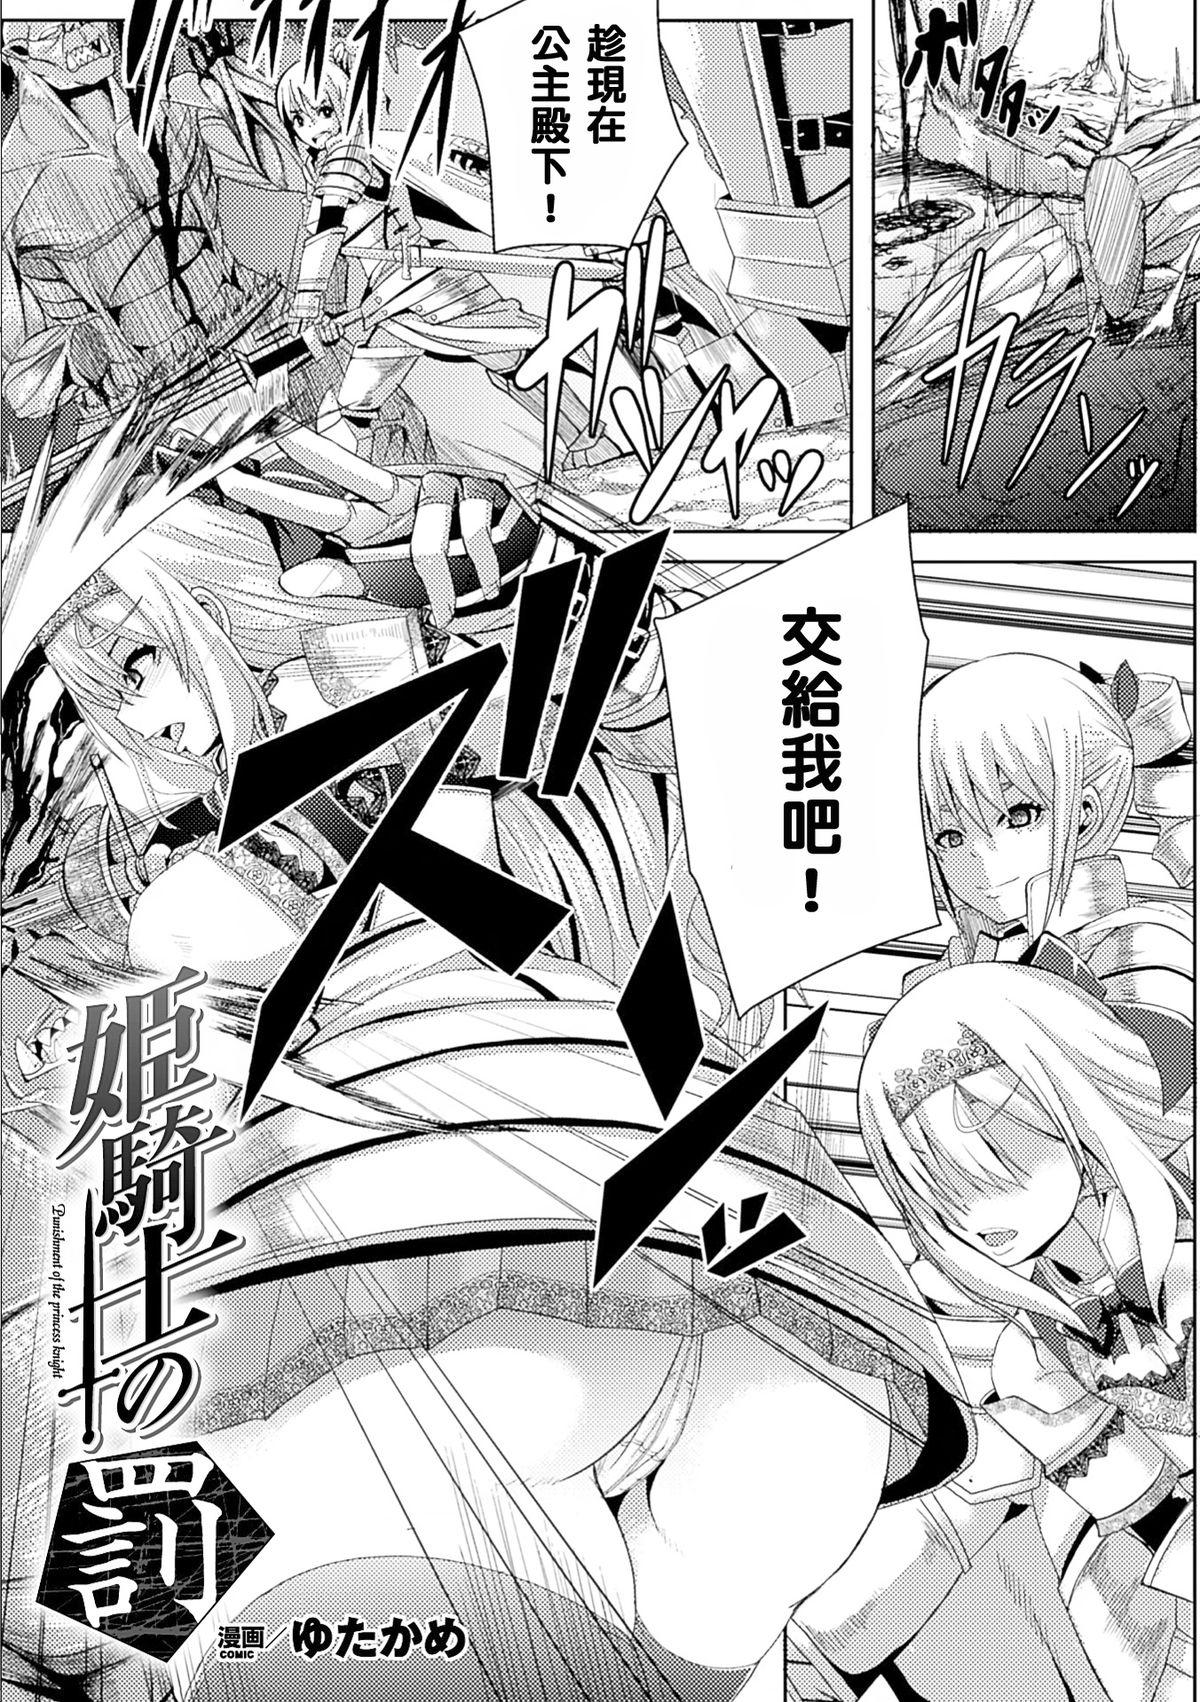 Nuru Himekishi no Batsu - Punishment of Princess Knight Classic - Page 1